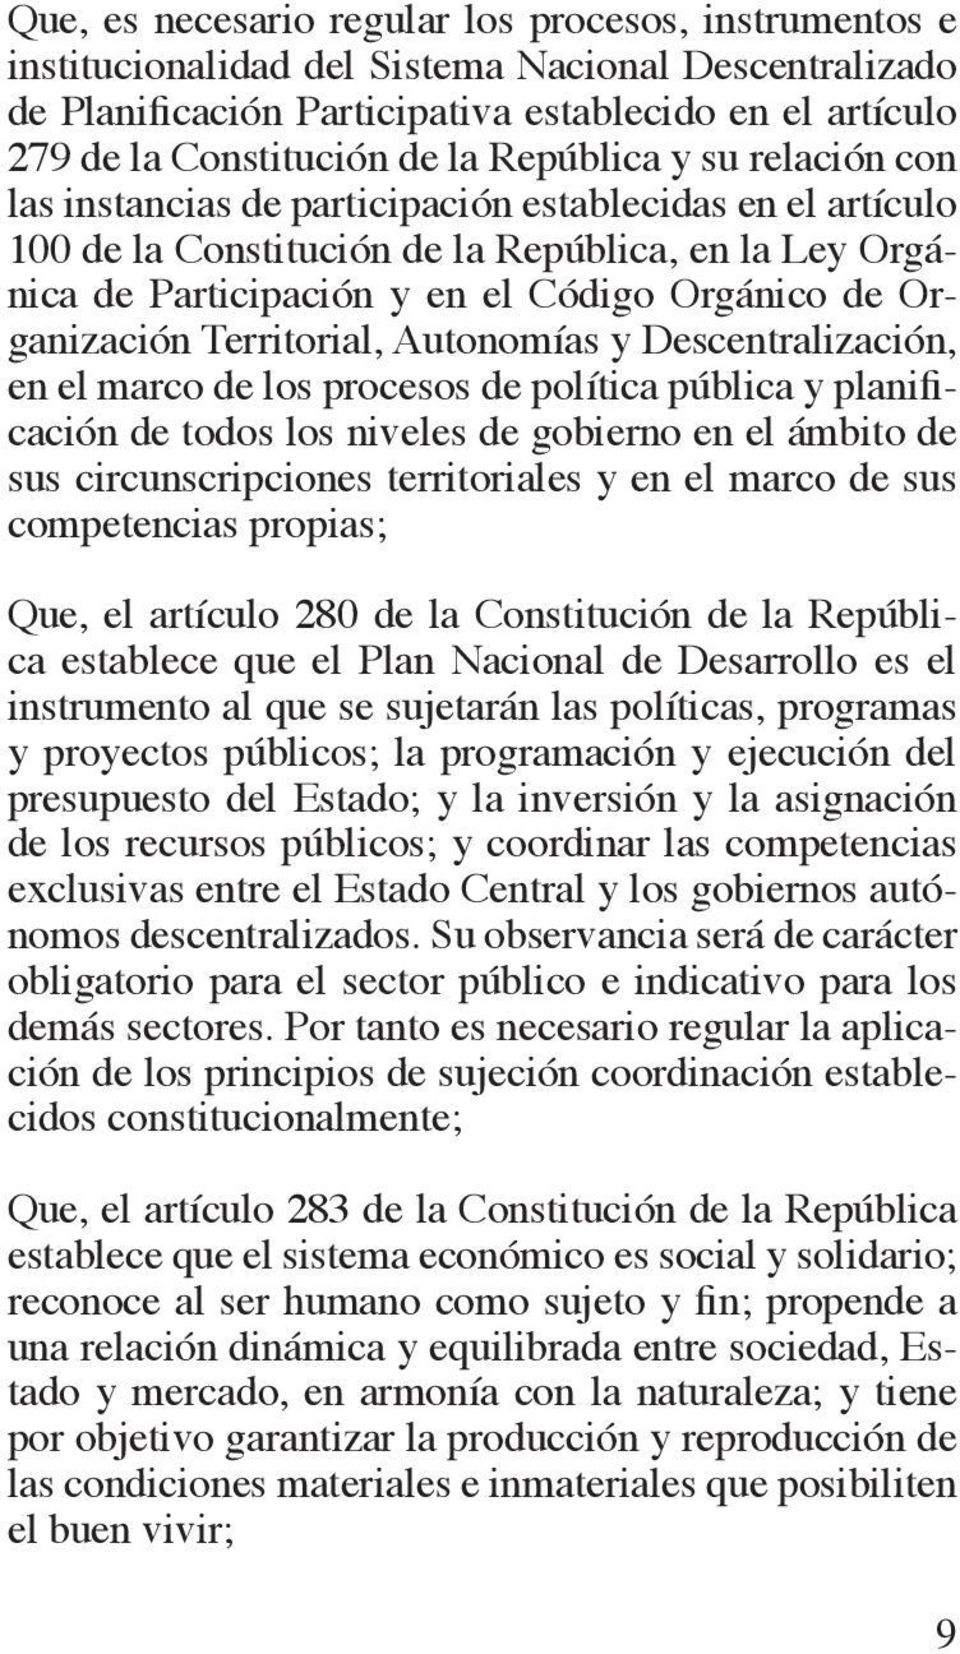 Organización Territorial, Autonomías y Descentralización, en el marco de los procesos de política pública y planificación de todos los niveles de gobierno en el ámbito de sus circunscripciones